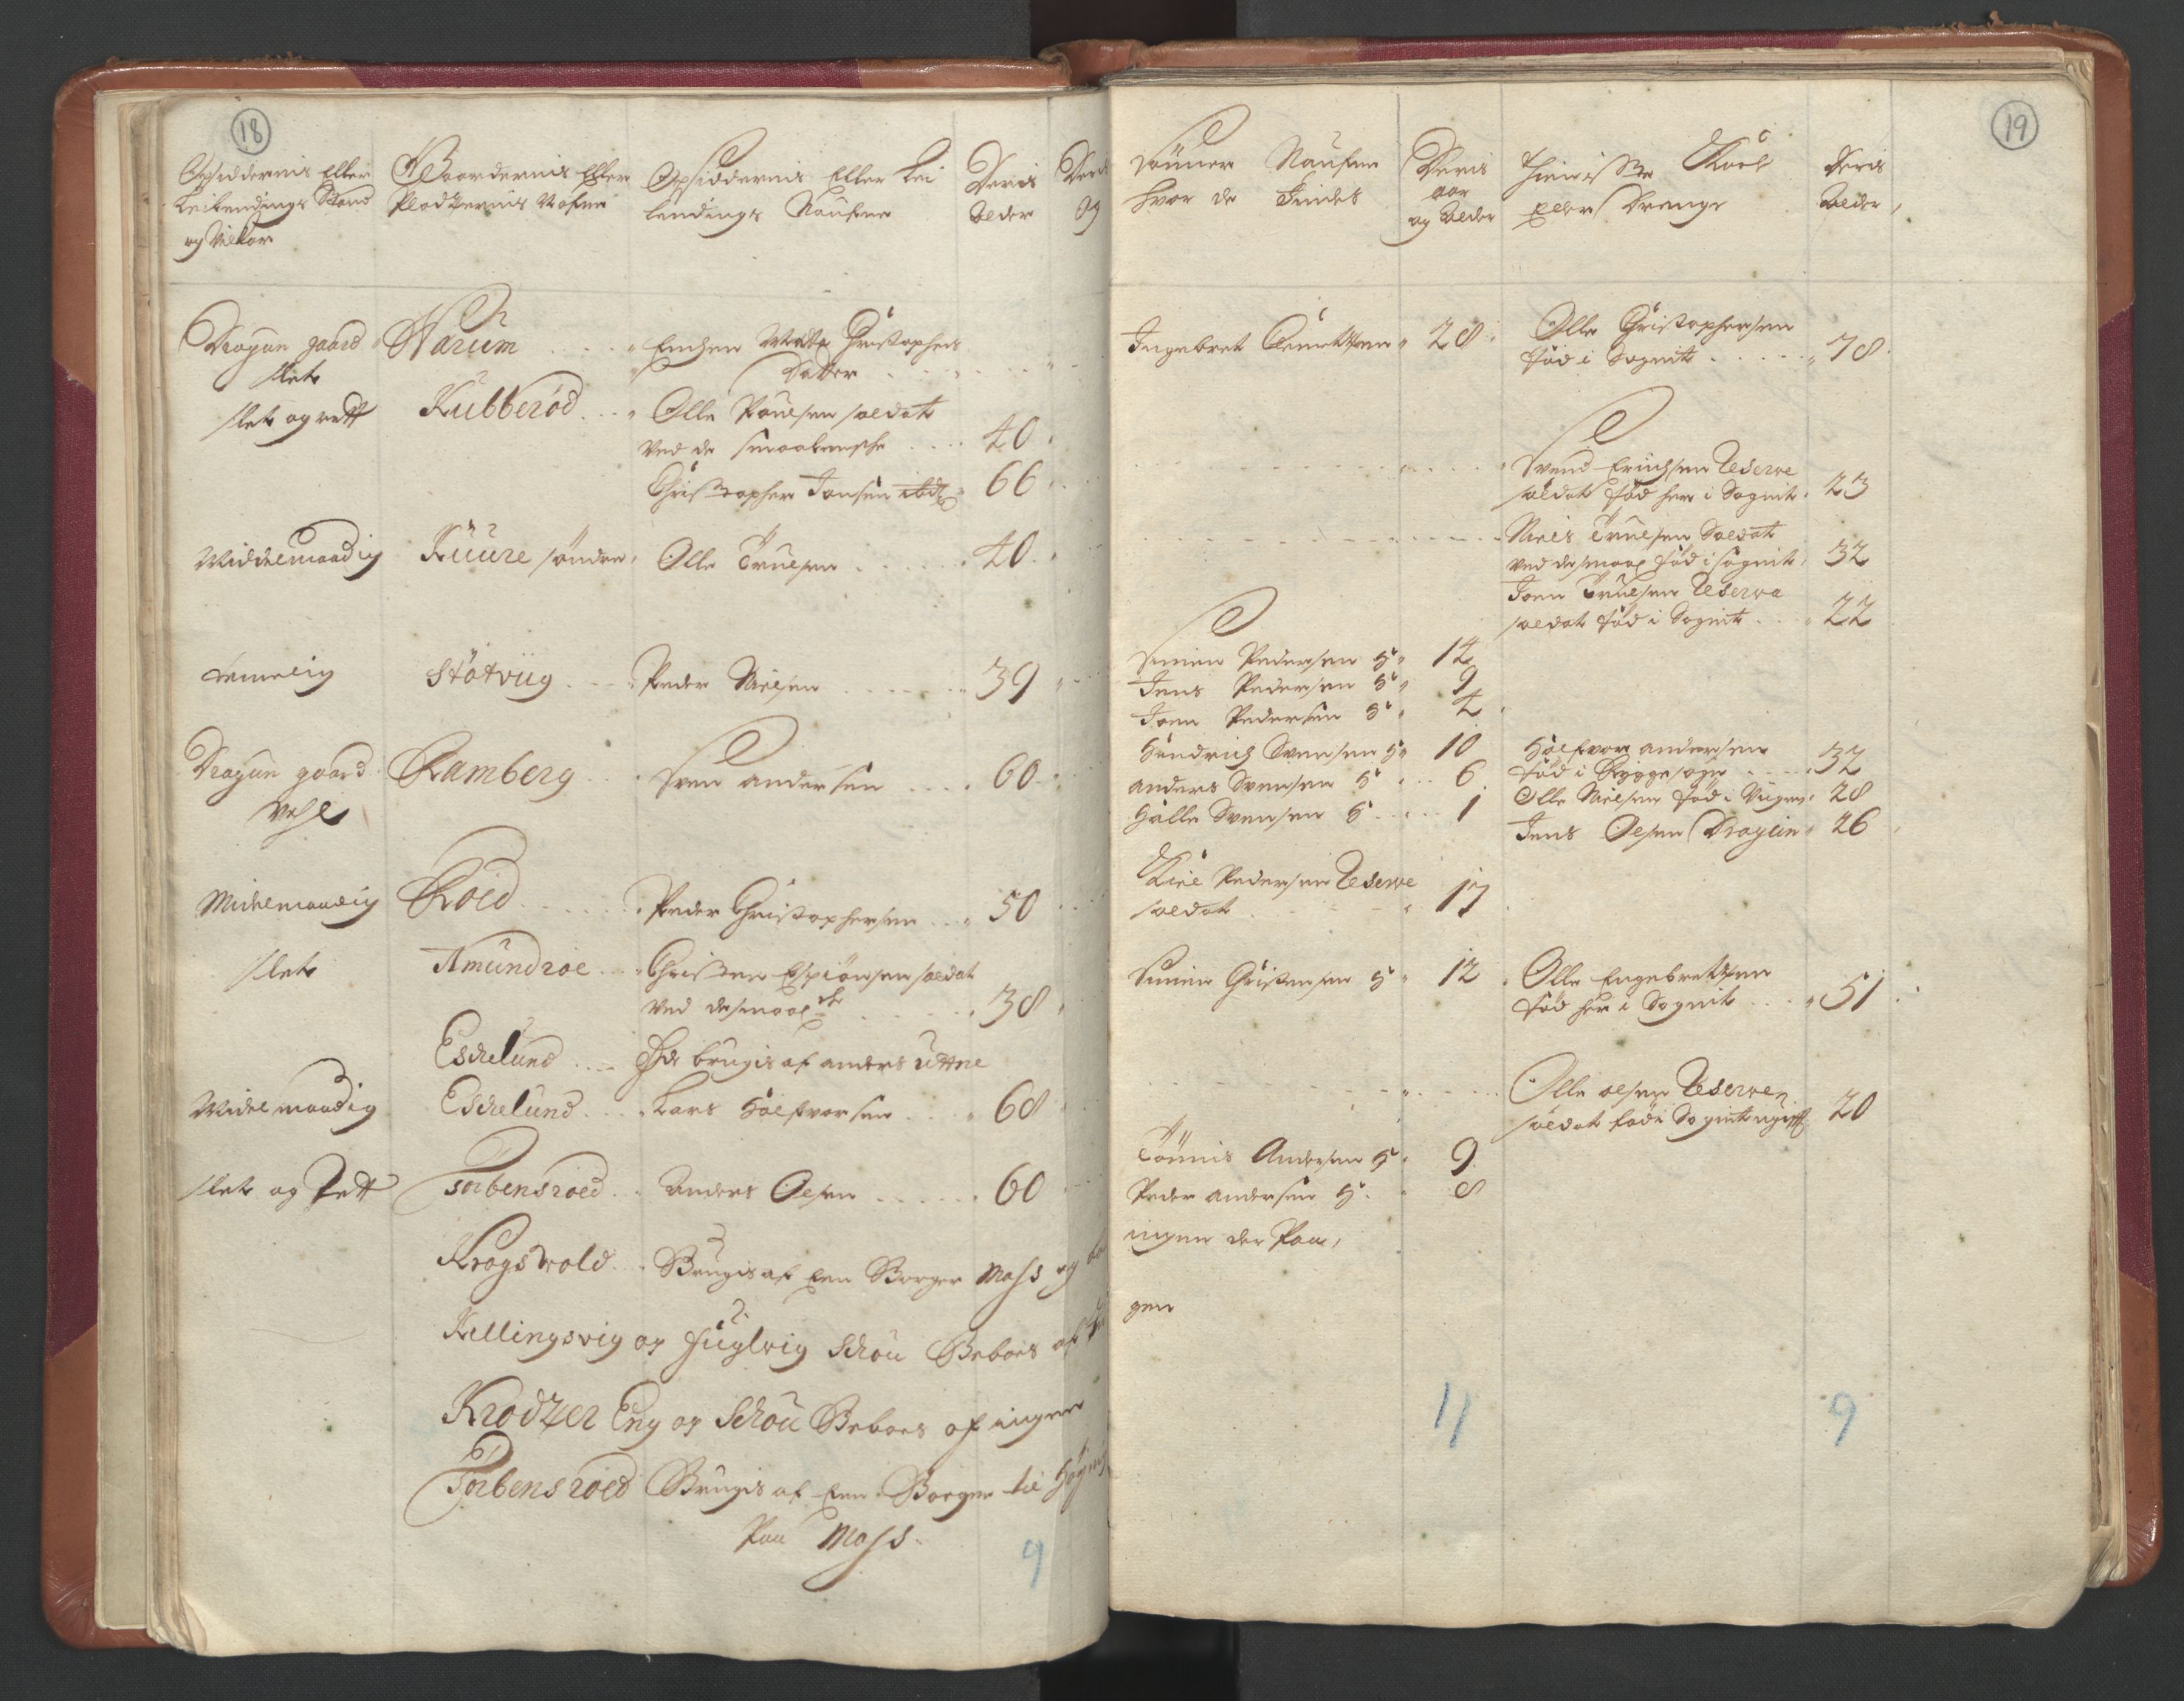 RA, Manntallet 1701, nr. 1: Moss, Onsøy, Tune og Veme fogderi og Nedre Romerike fogderi, 1701, s. 18-19